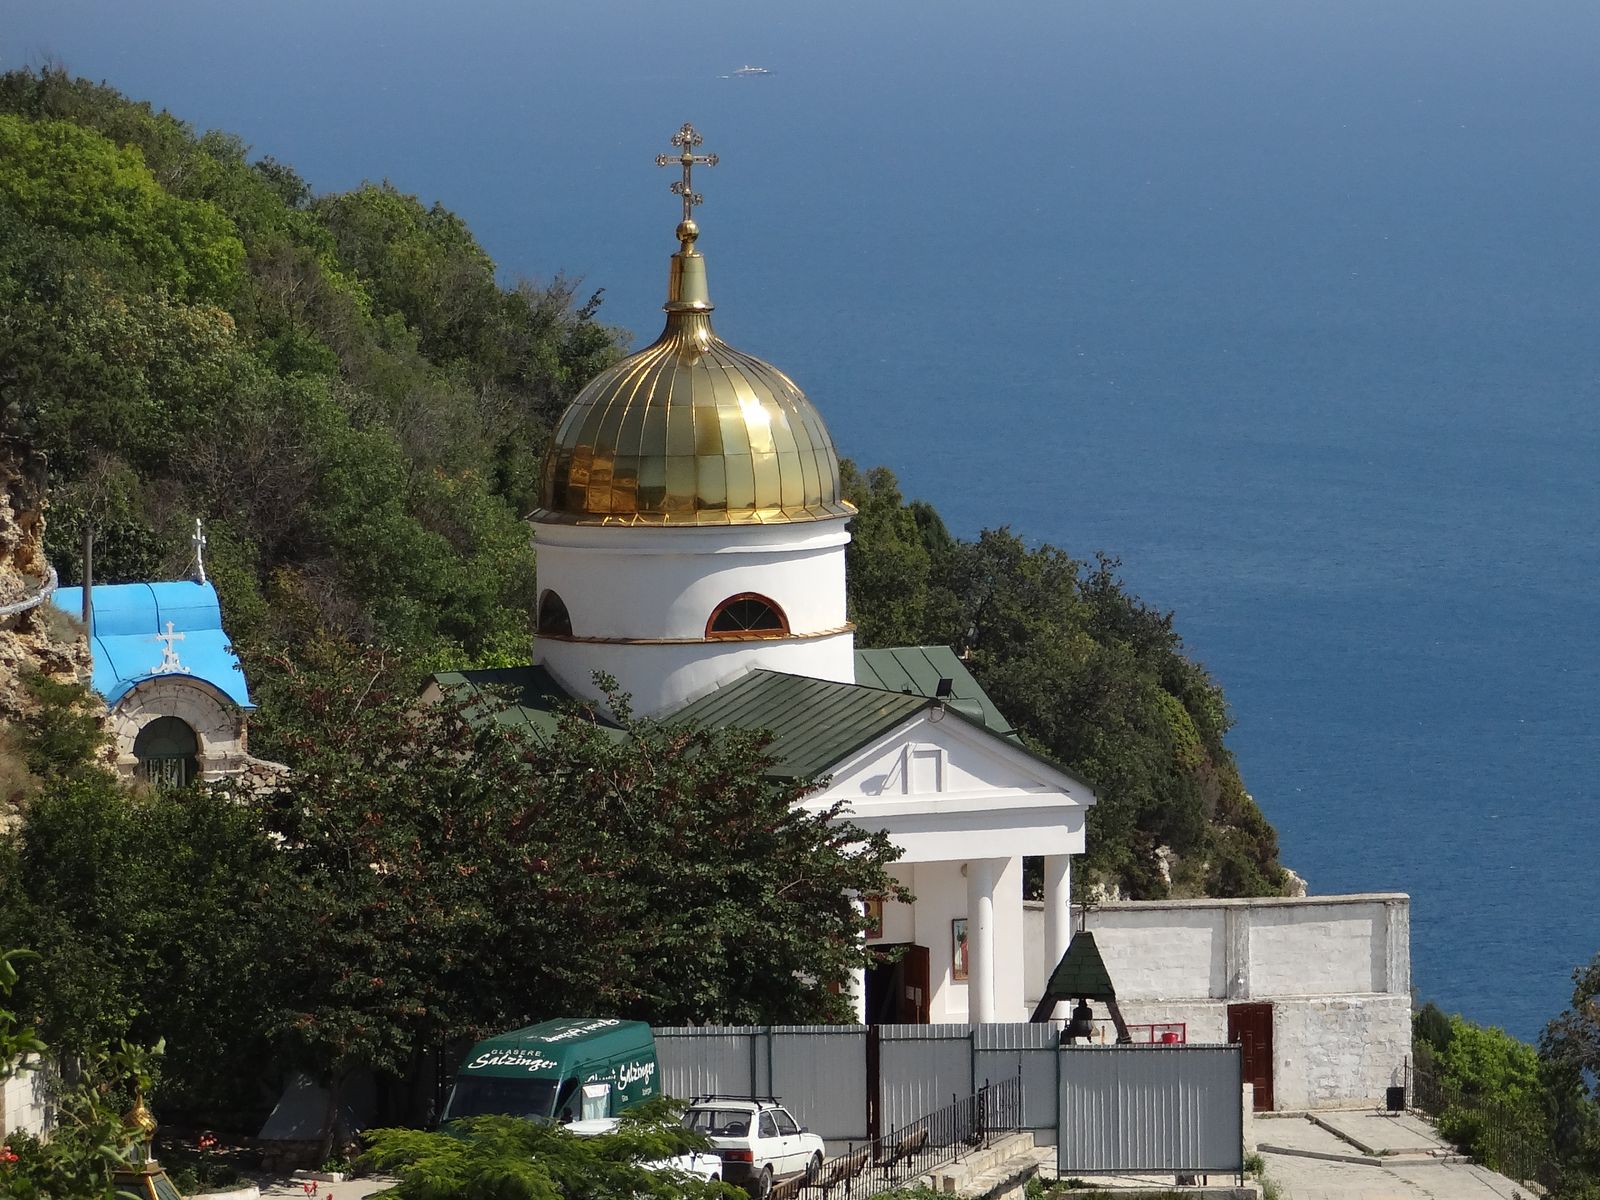 Свято-Георгиевский монастырь